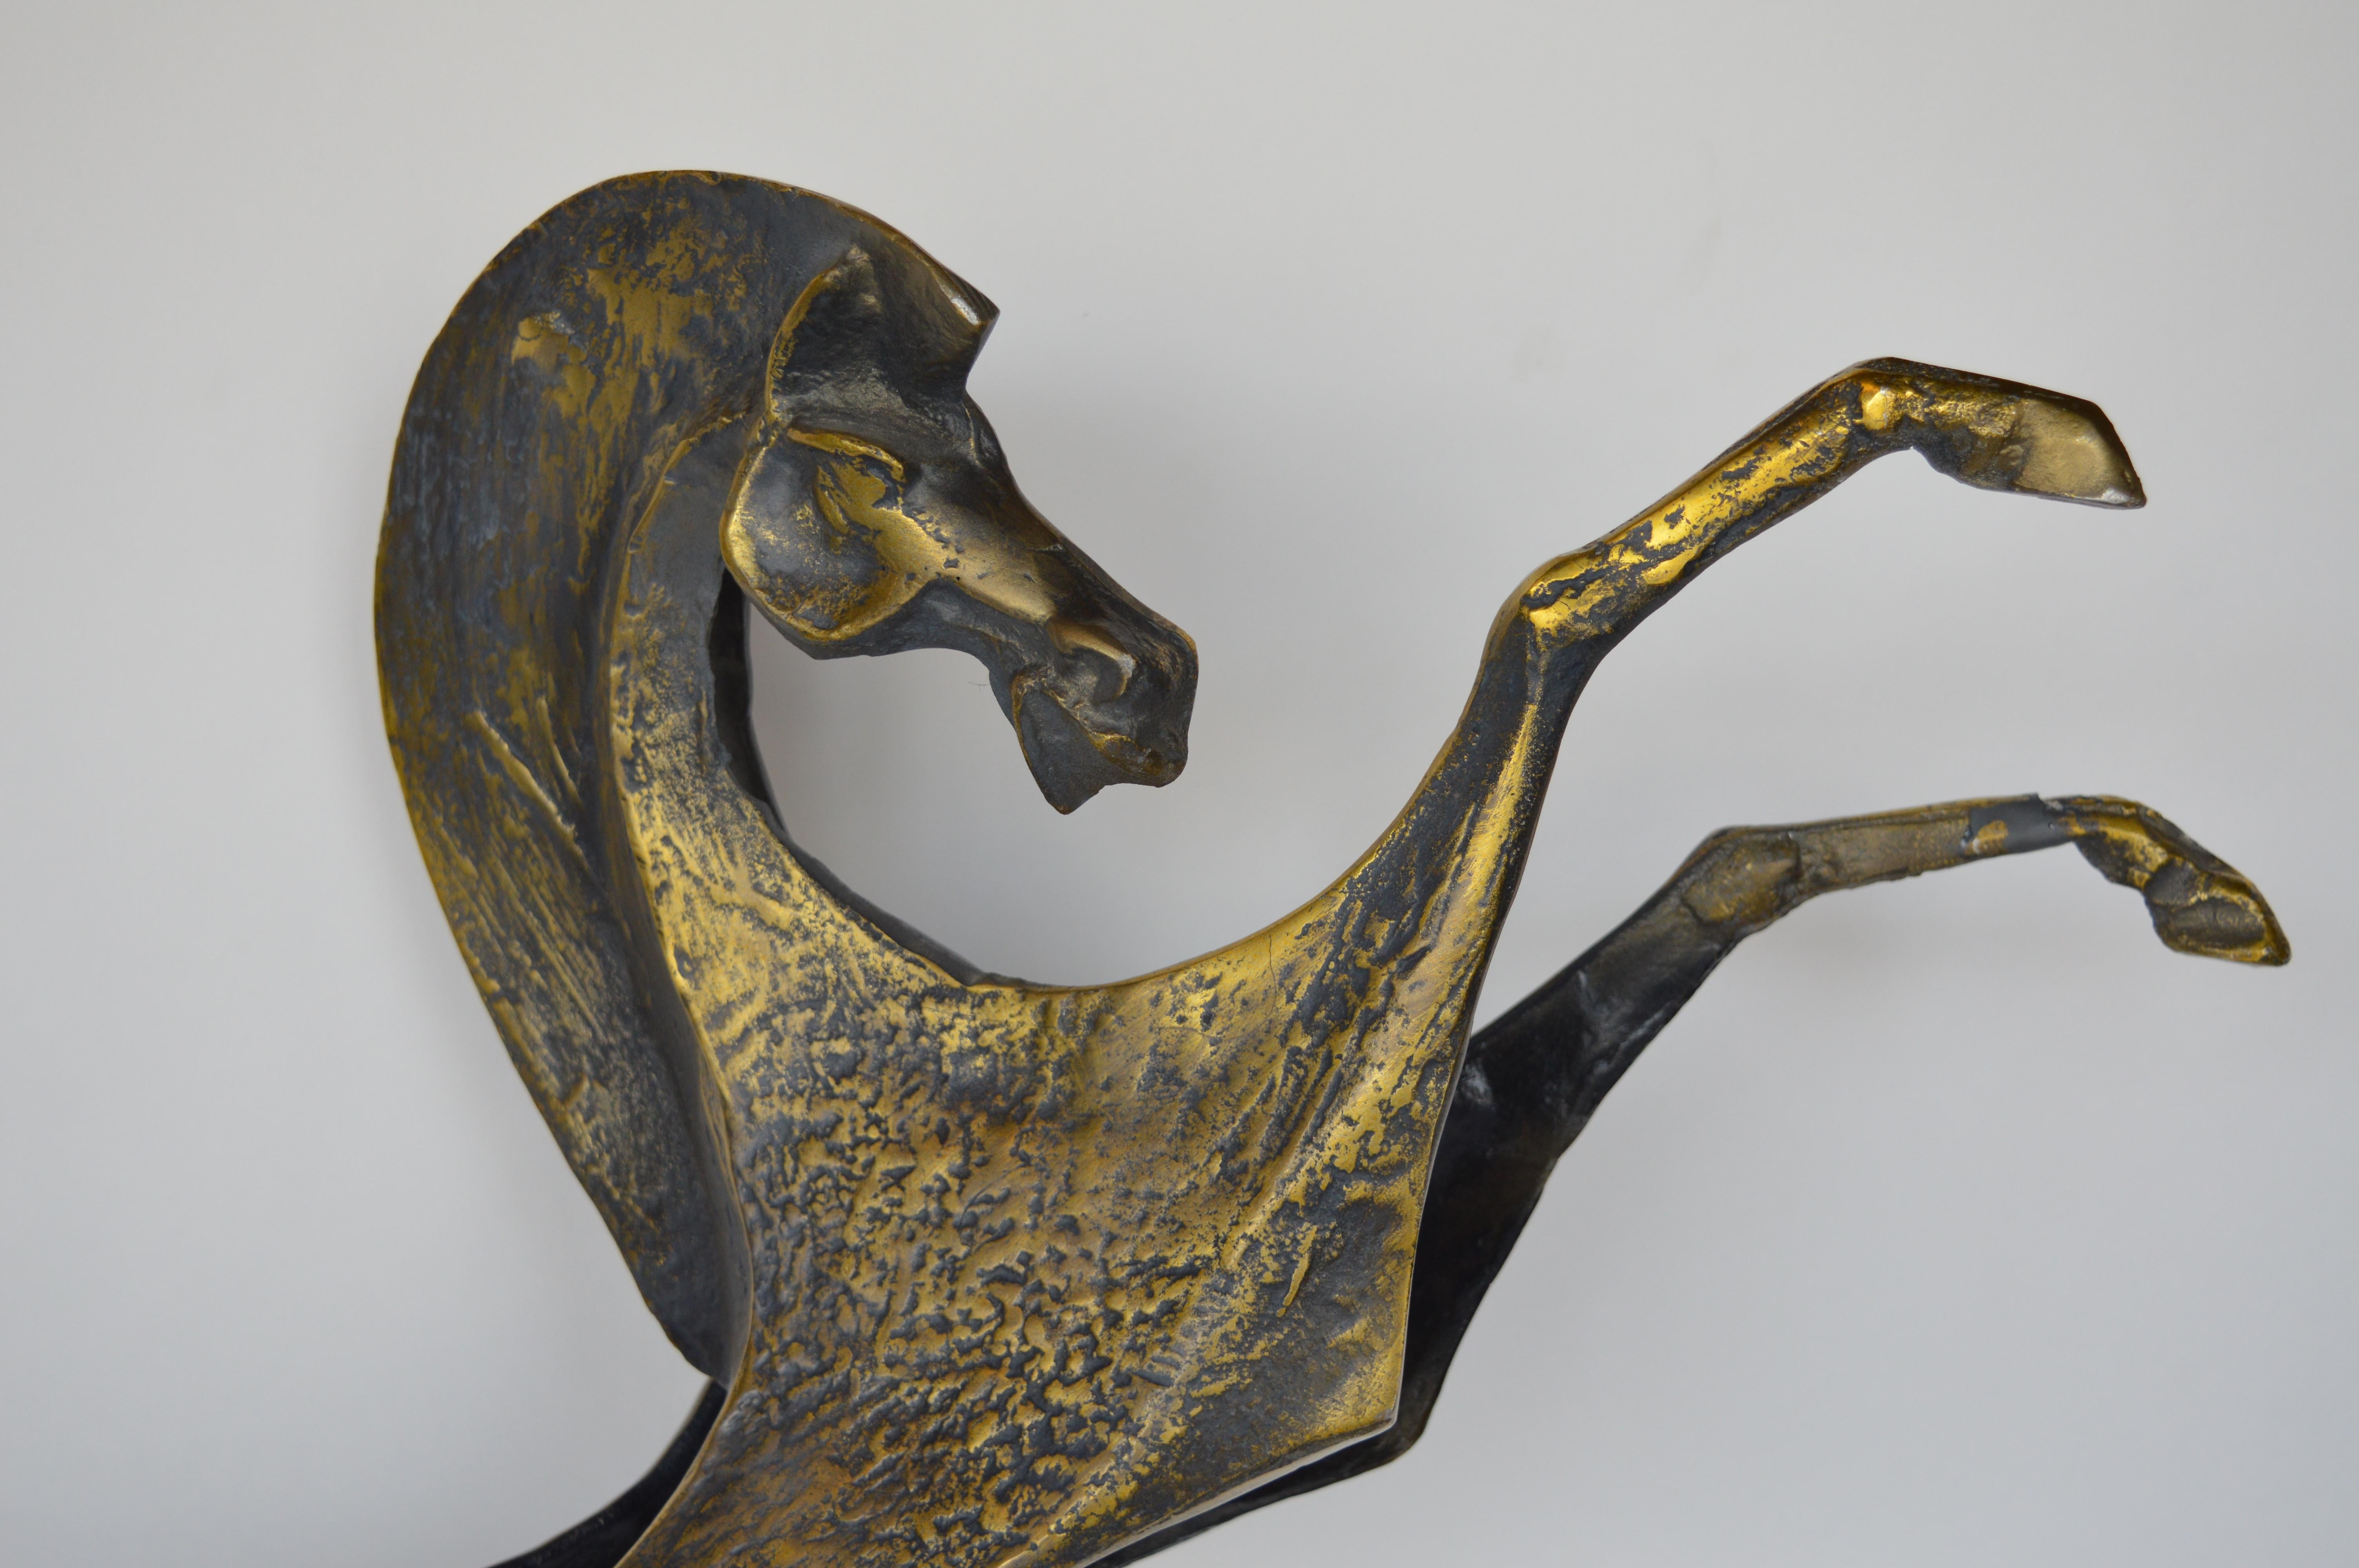 Curtus Jere Pferdeskulptur aus Metall mit bronzener Patina.